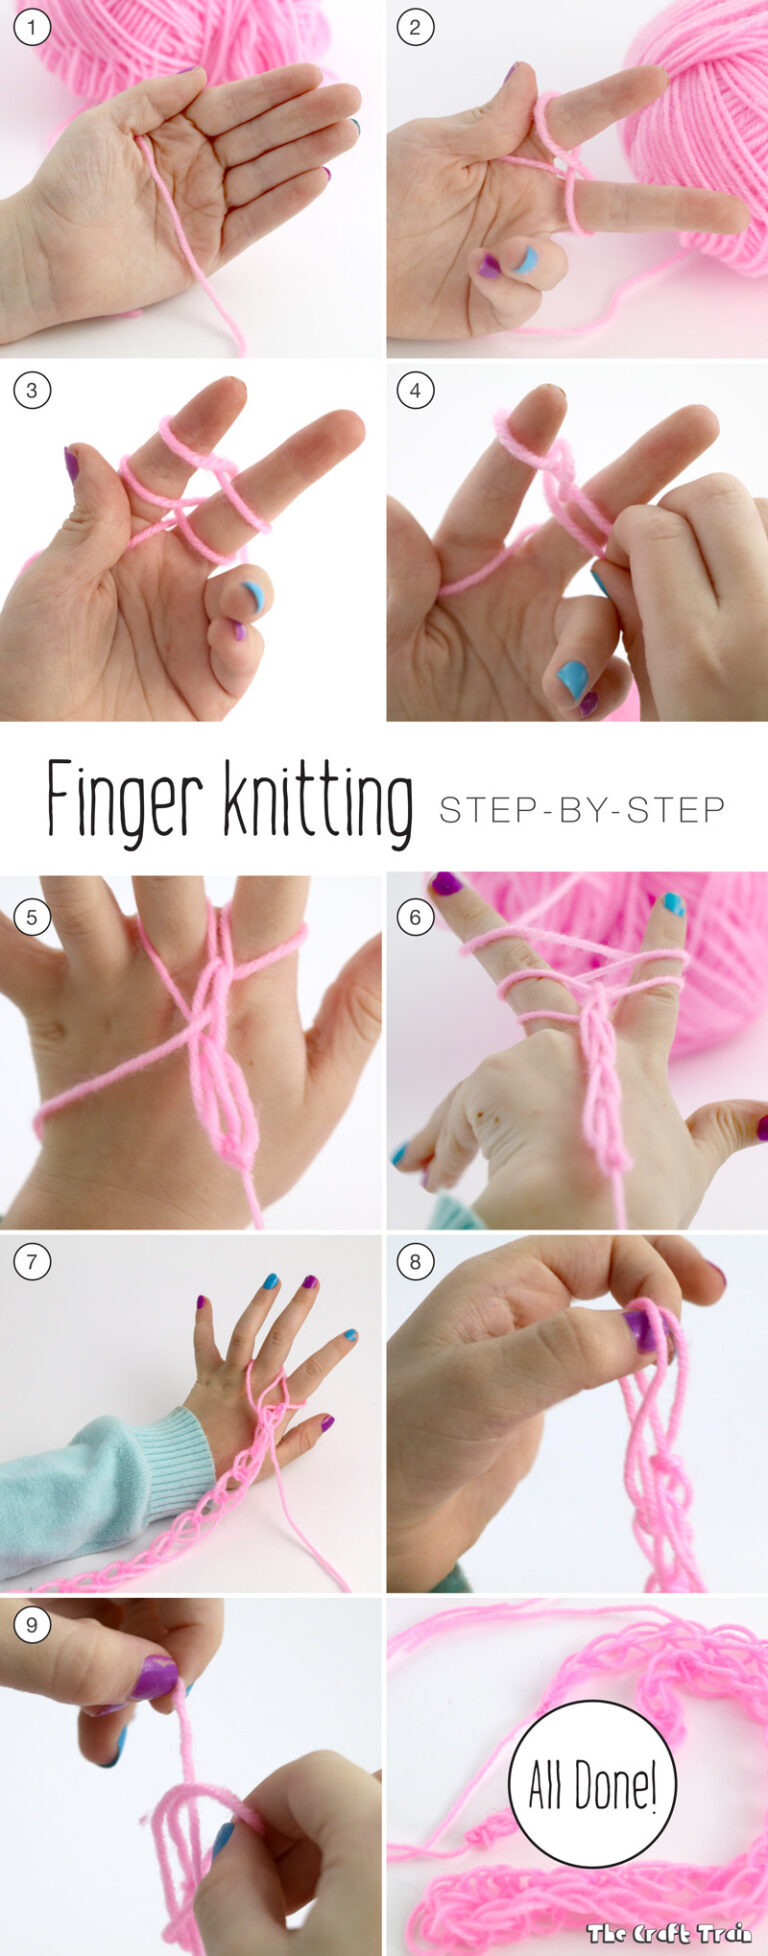 How Do You Finger Knit? - 9ffde1adeb004fb99146ca4f6e91ad0e